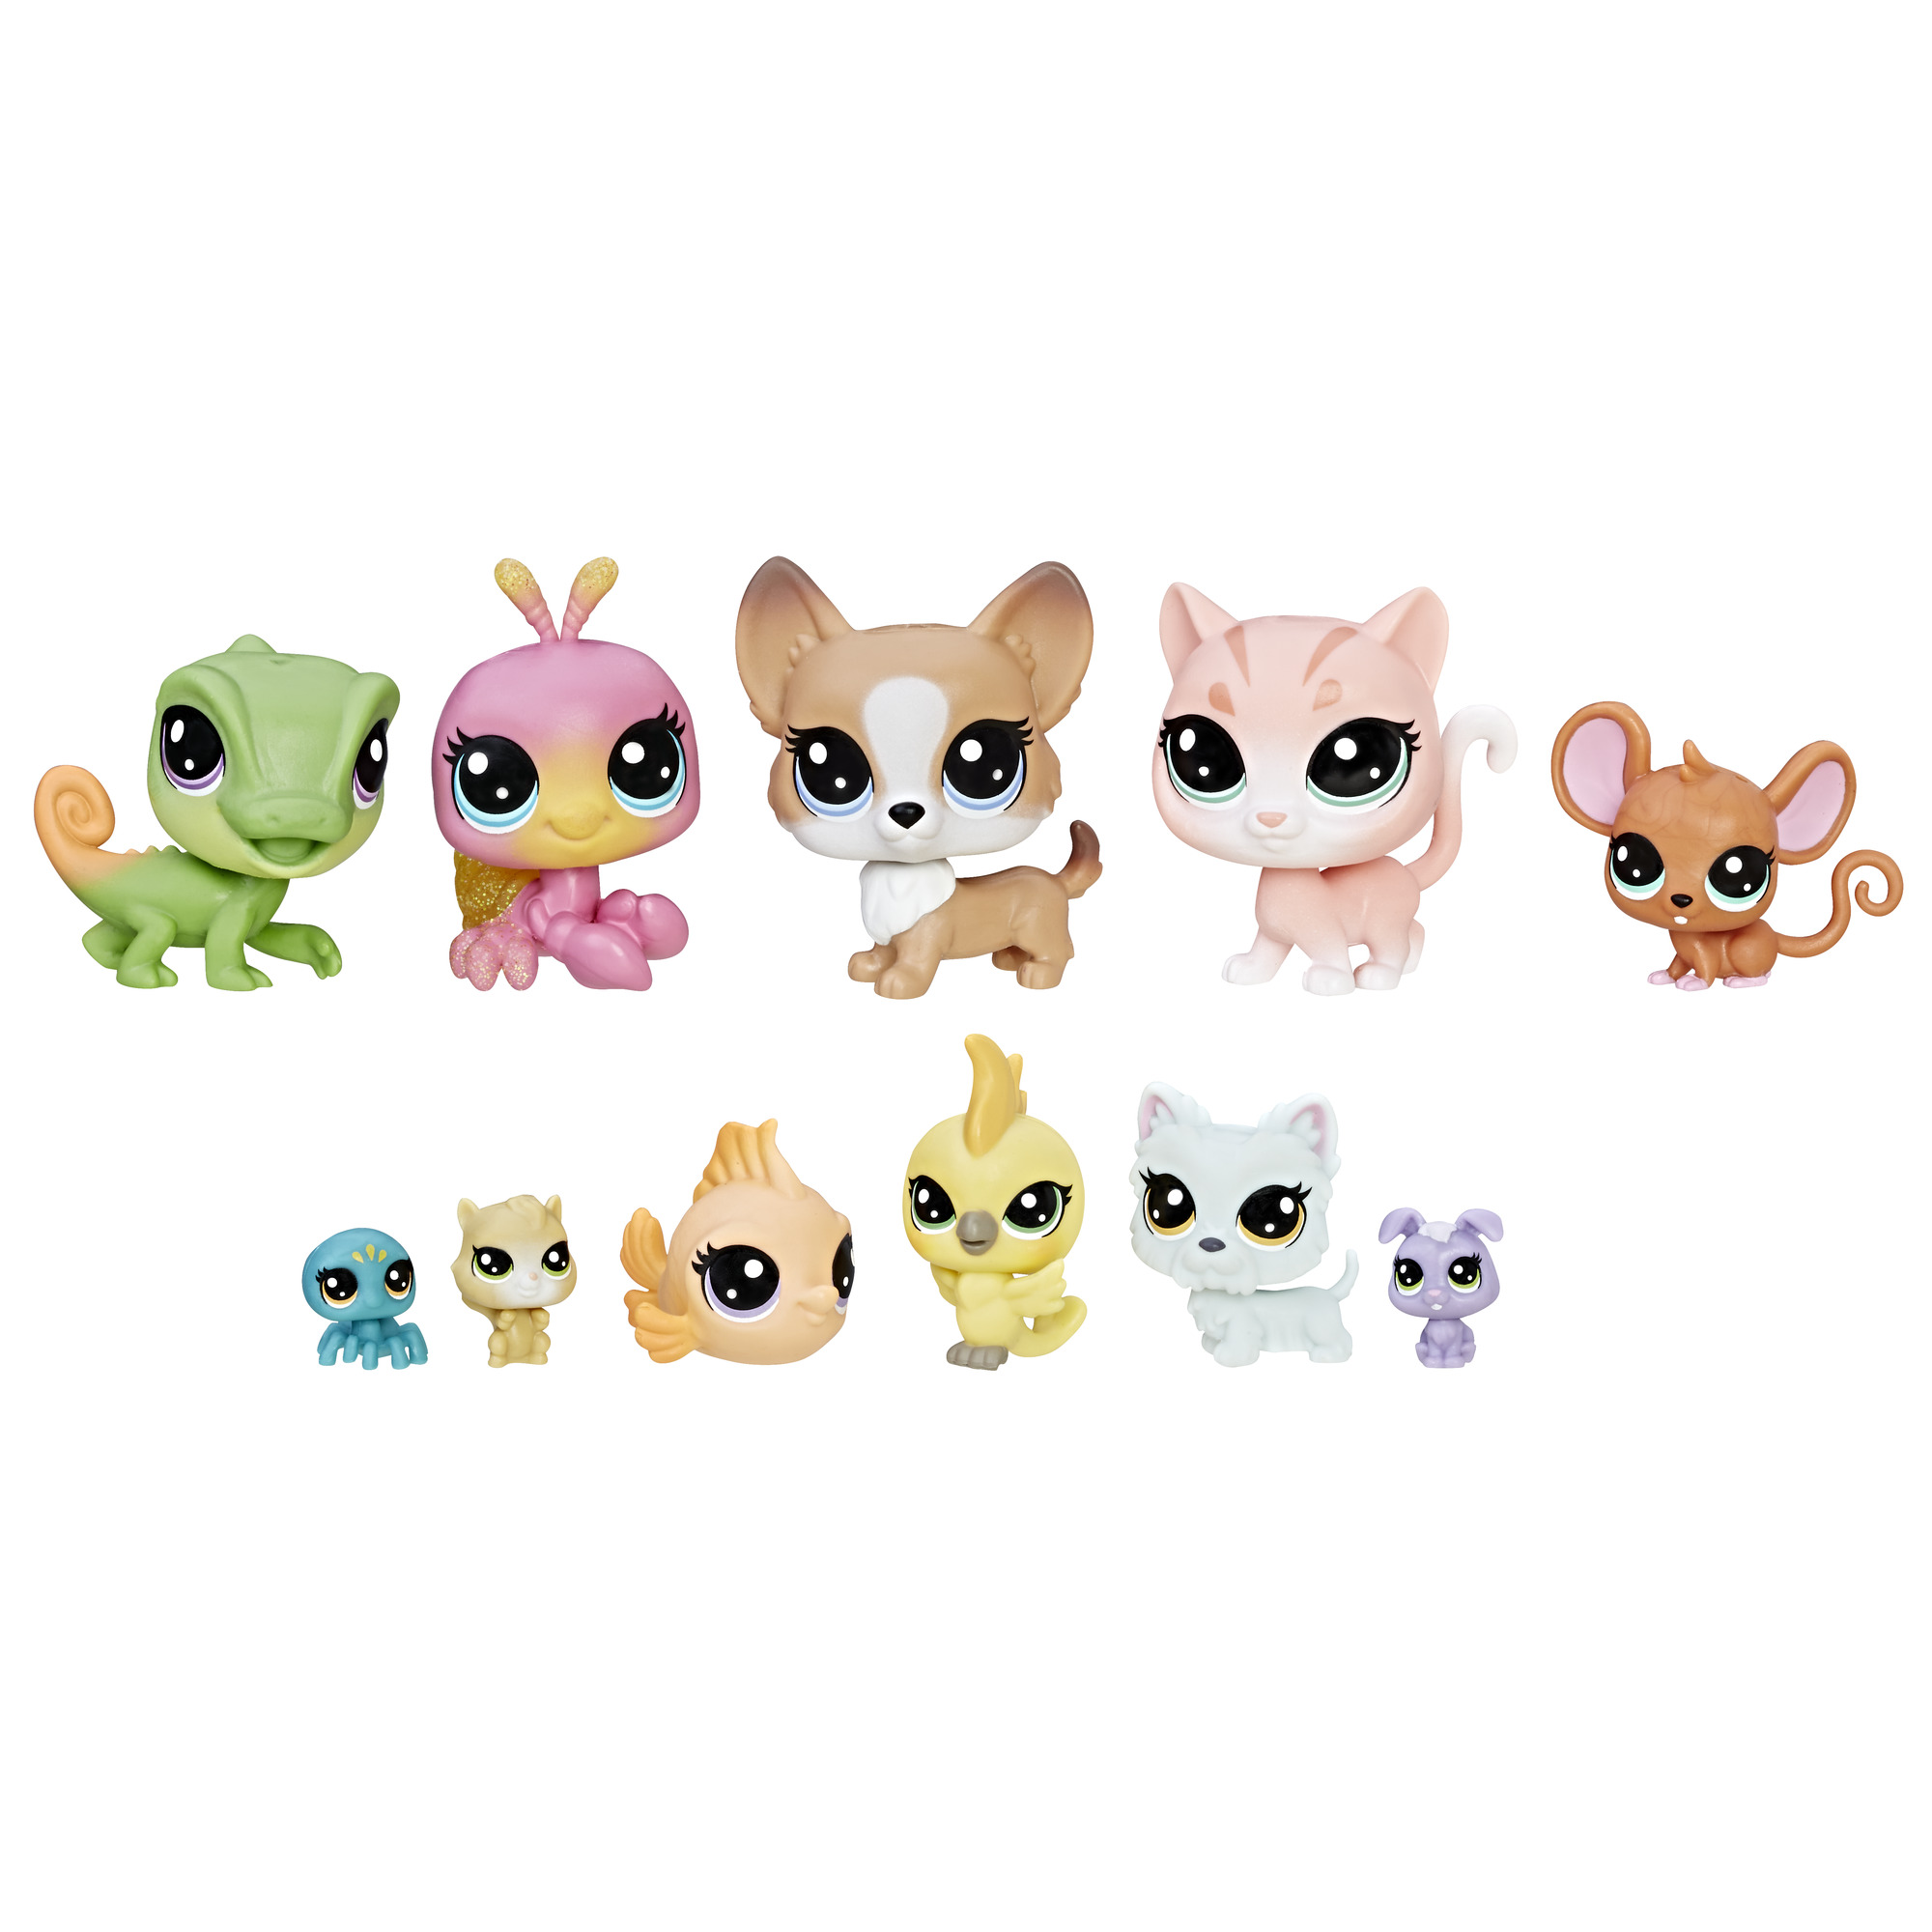 Игрушки пэты. Игровой набор Littlest Pet shop коллекция петов b9343. Pet shop 1 коллекция лпс. Hasbro Littlest Pet shop. Hasbro LPS петы.